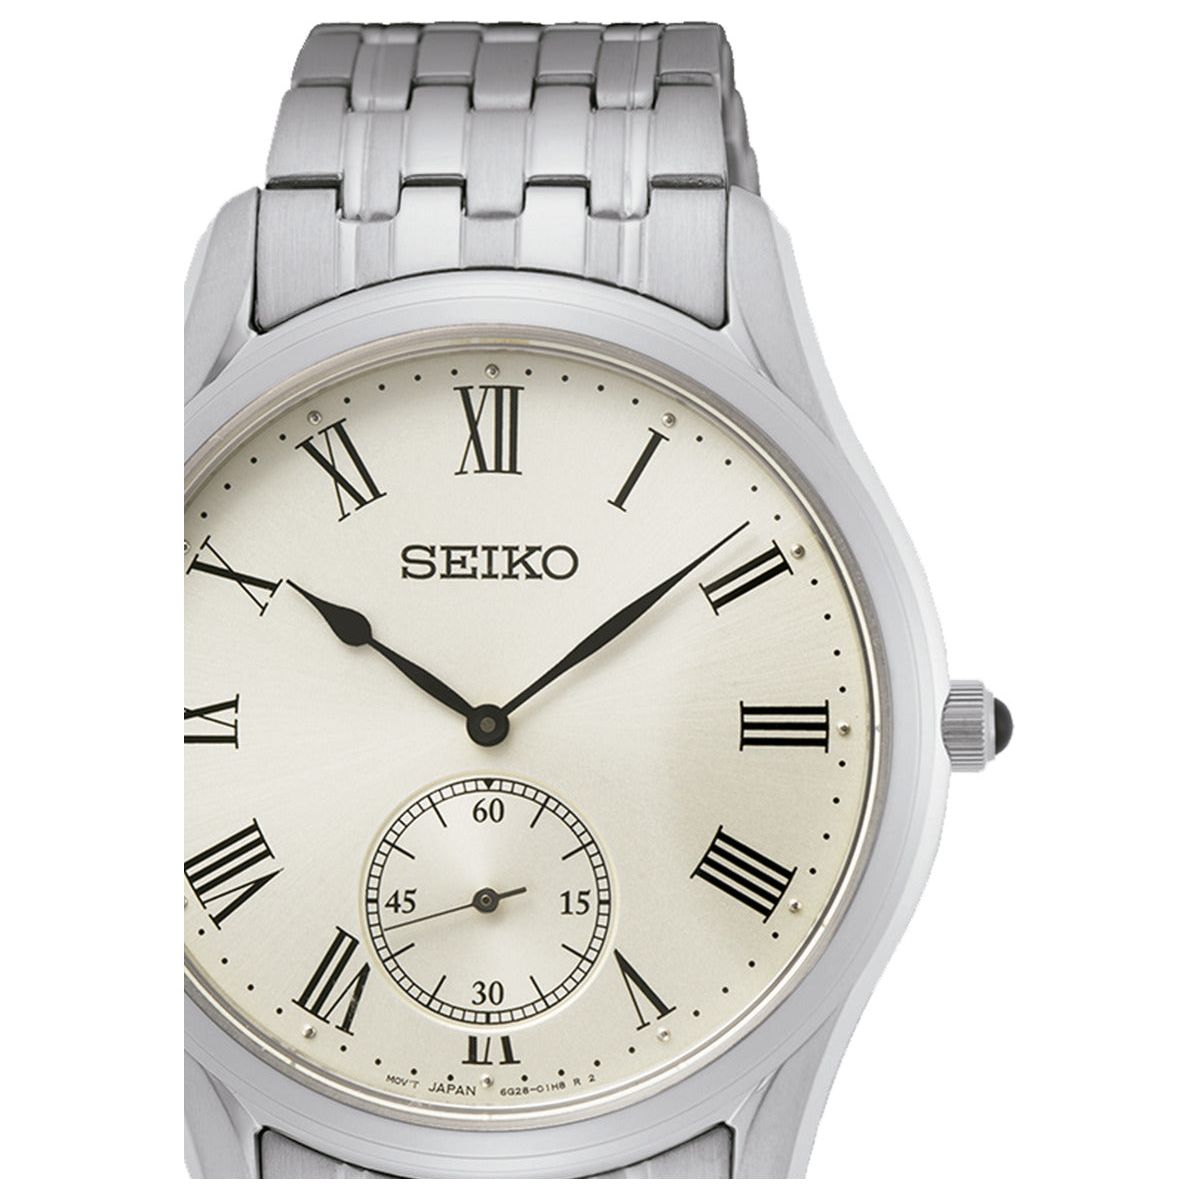 SEIKO SEIKO WATCHES Mod. SRK047P1 WATCHES seiko-watches-mod-srk047p1